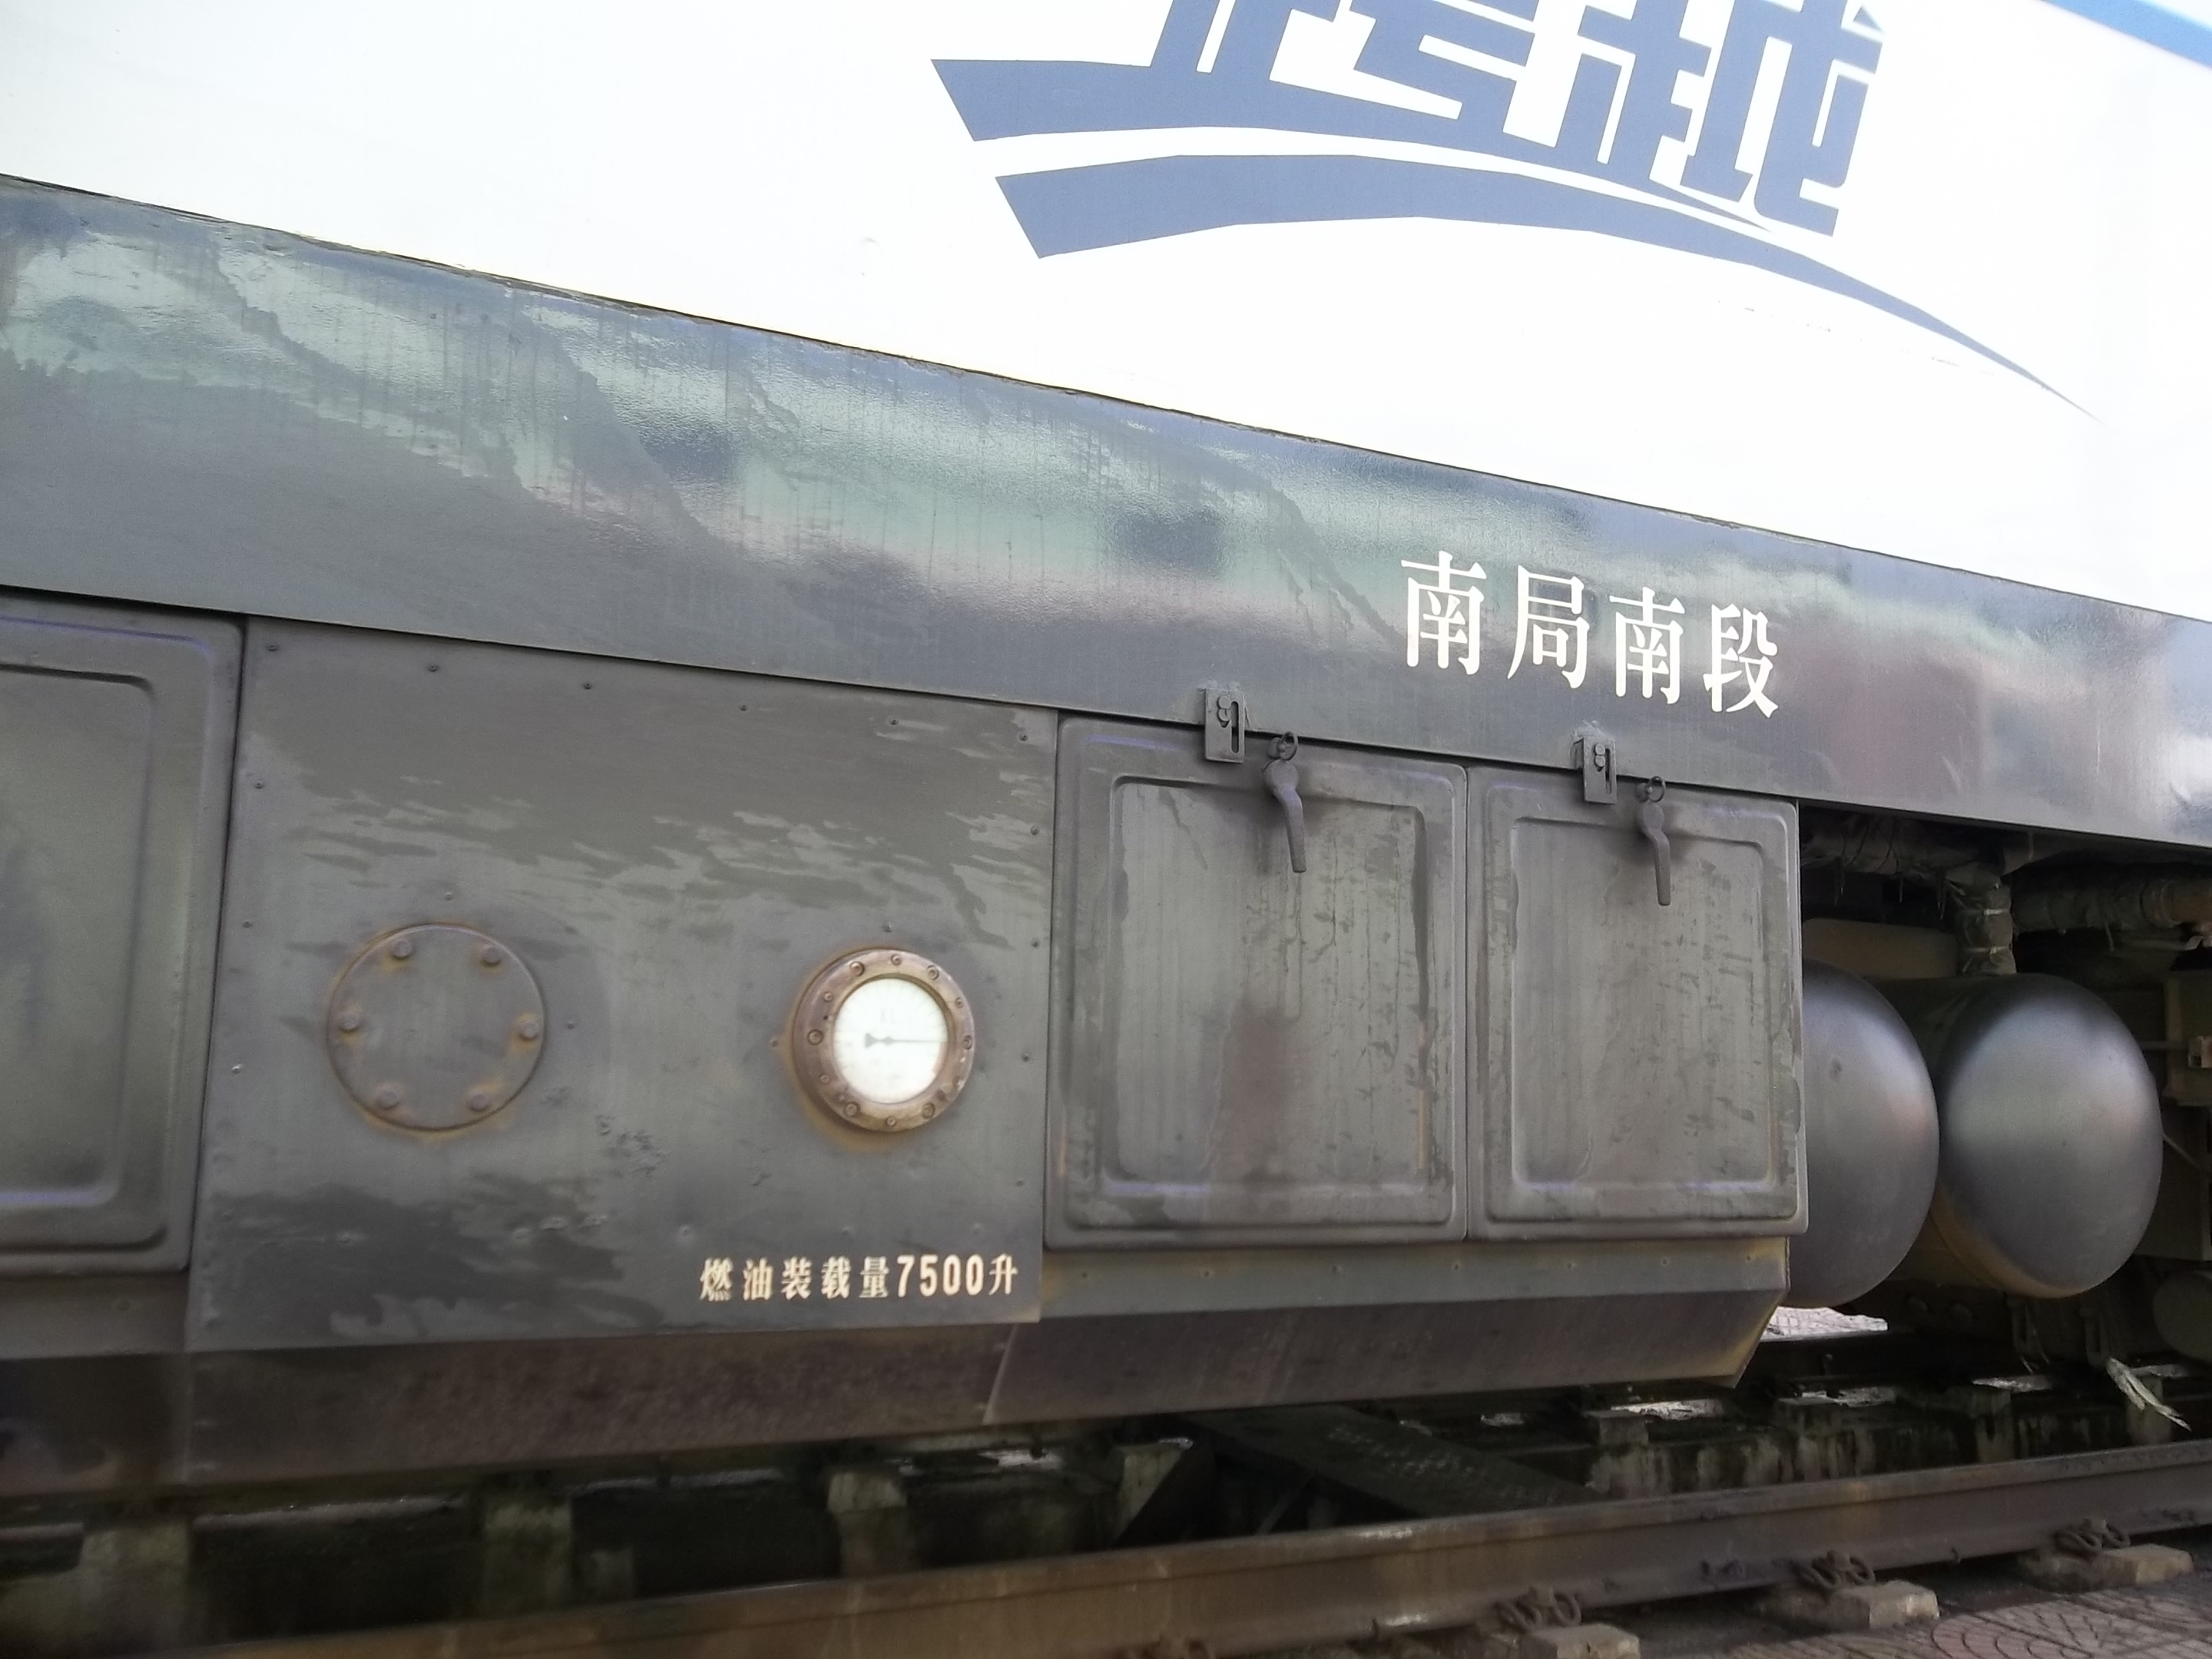 铁路机车车辆图鉴大赏——跨越猪(df11g)